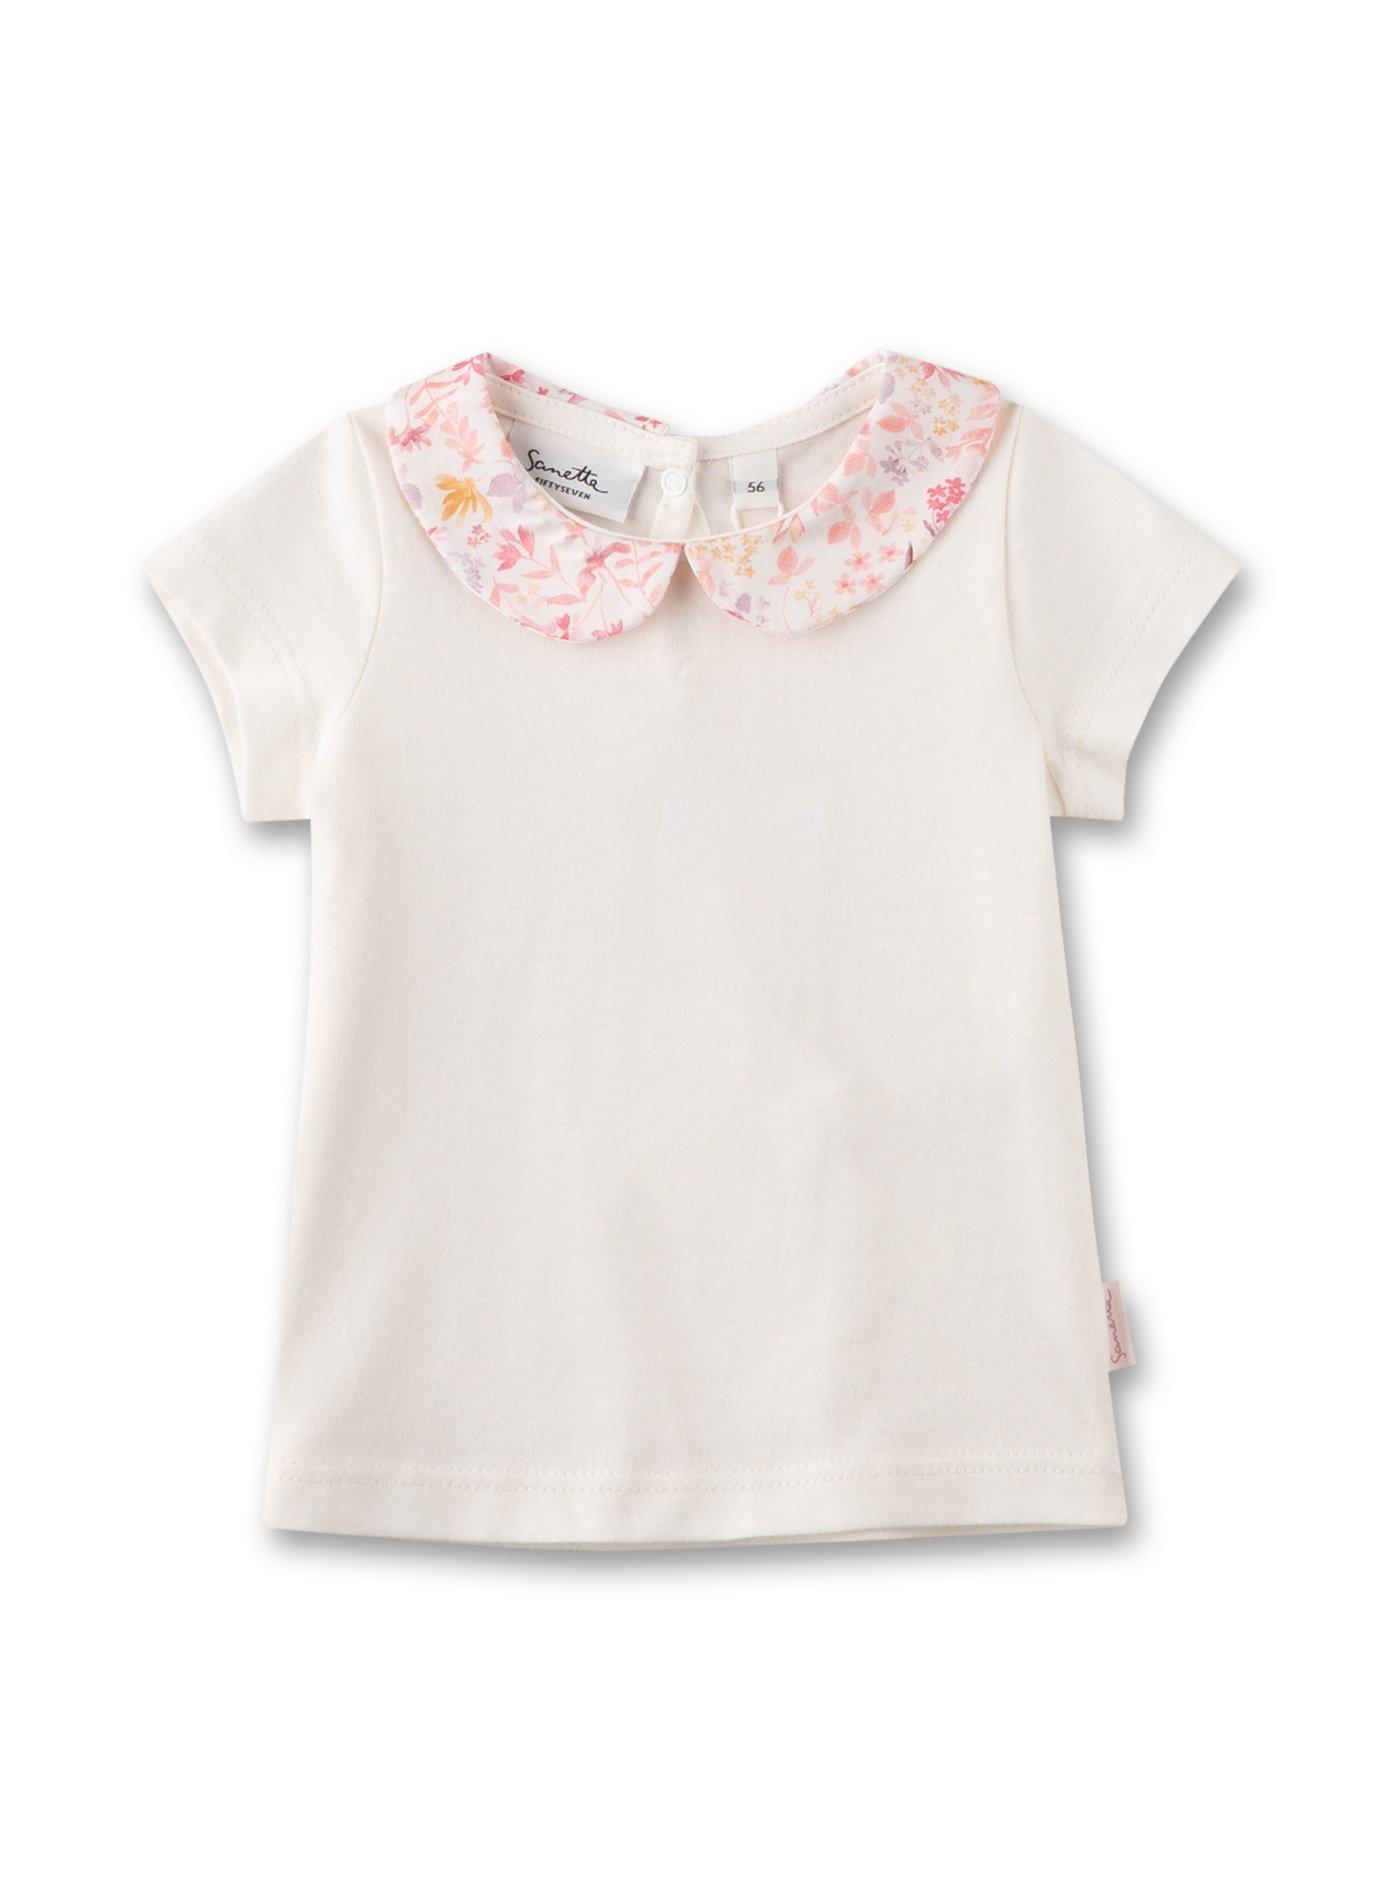 Sanetta Fiftyseven  Baby Mädchen T-Shirt Off-White mit Bubi-Kragen 